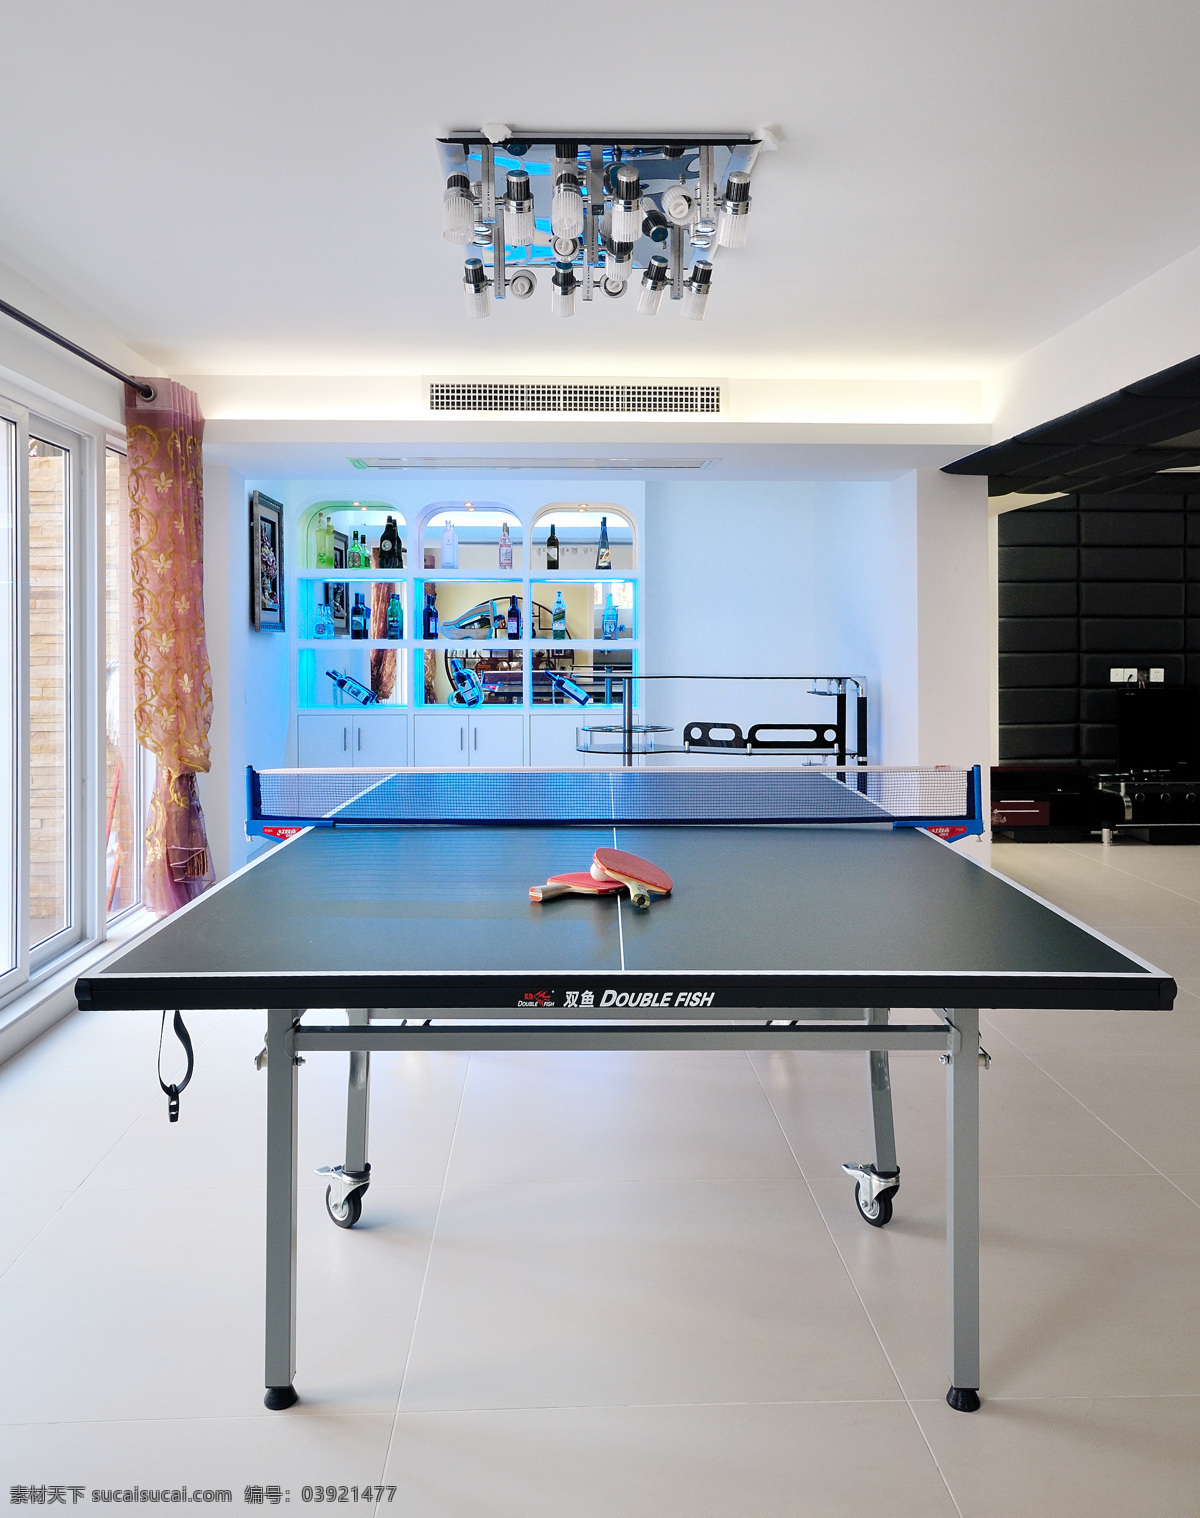 运动 室 乒乓球桌 设计图 家居 家居生活 室内设计 装修 室内 家具 装修设计 环境设计